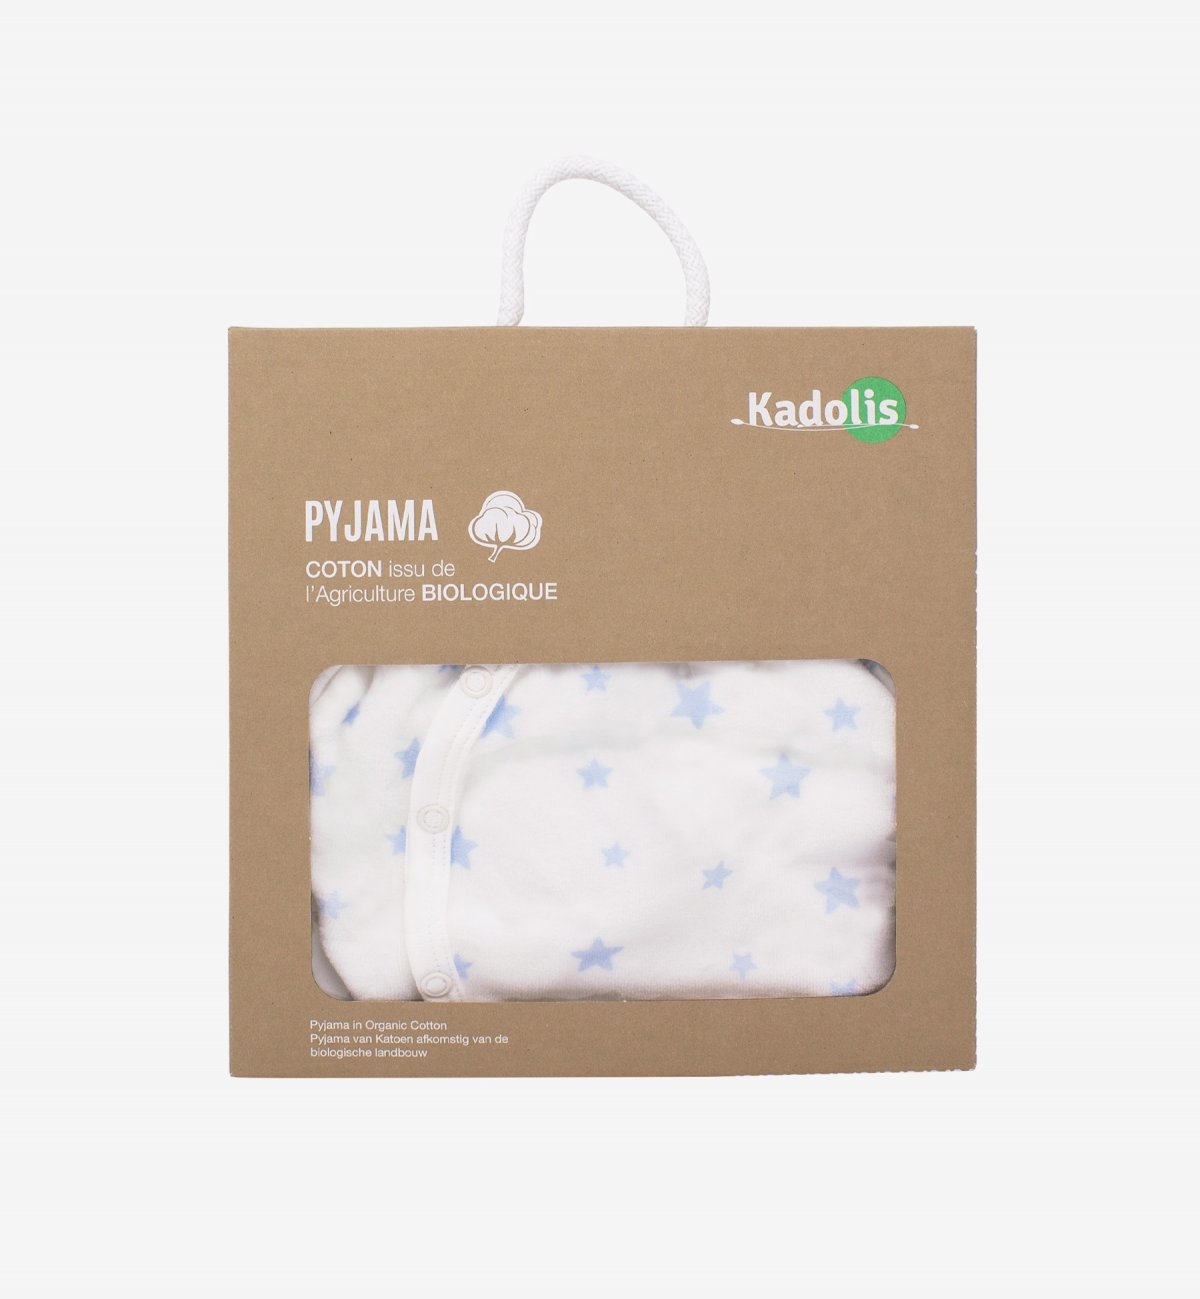 Pyjama bébé hiver en Coton Bio imprimé étoiles 0 à 18 mois